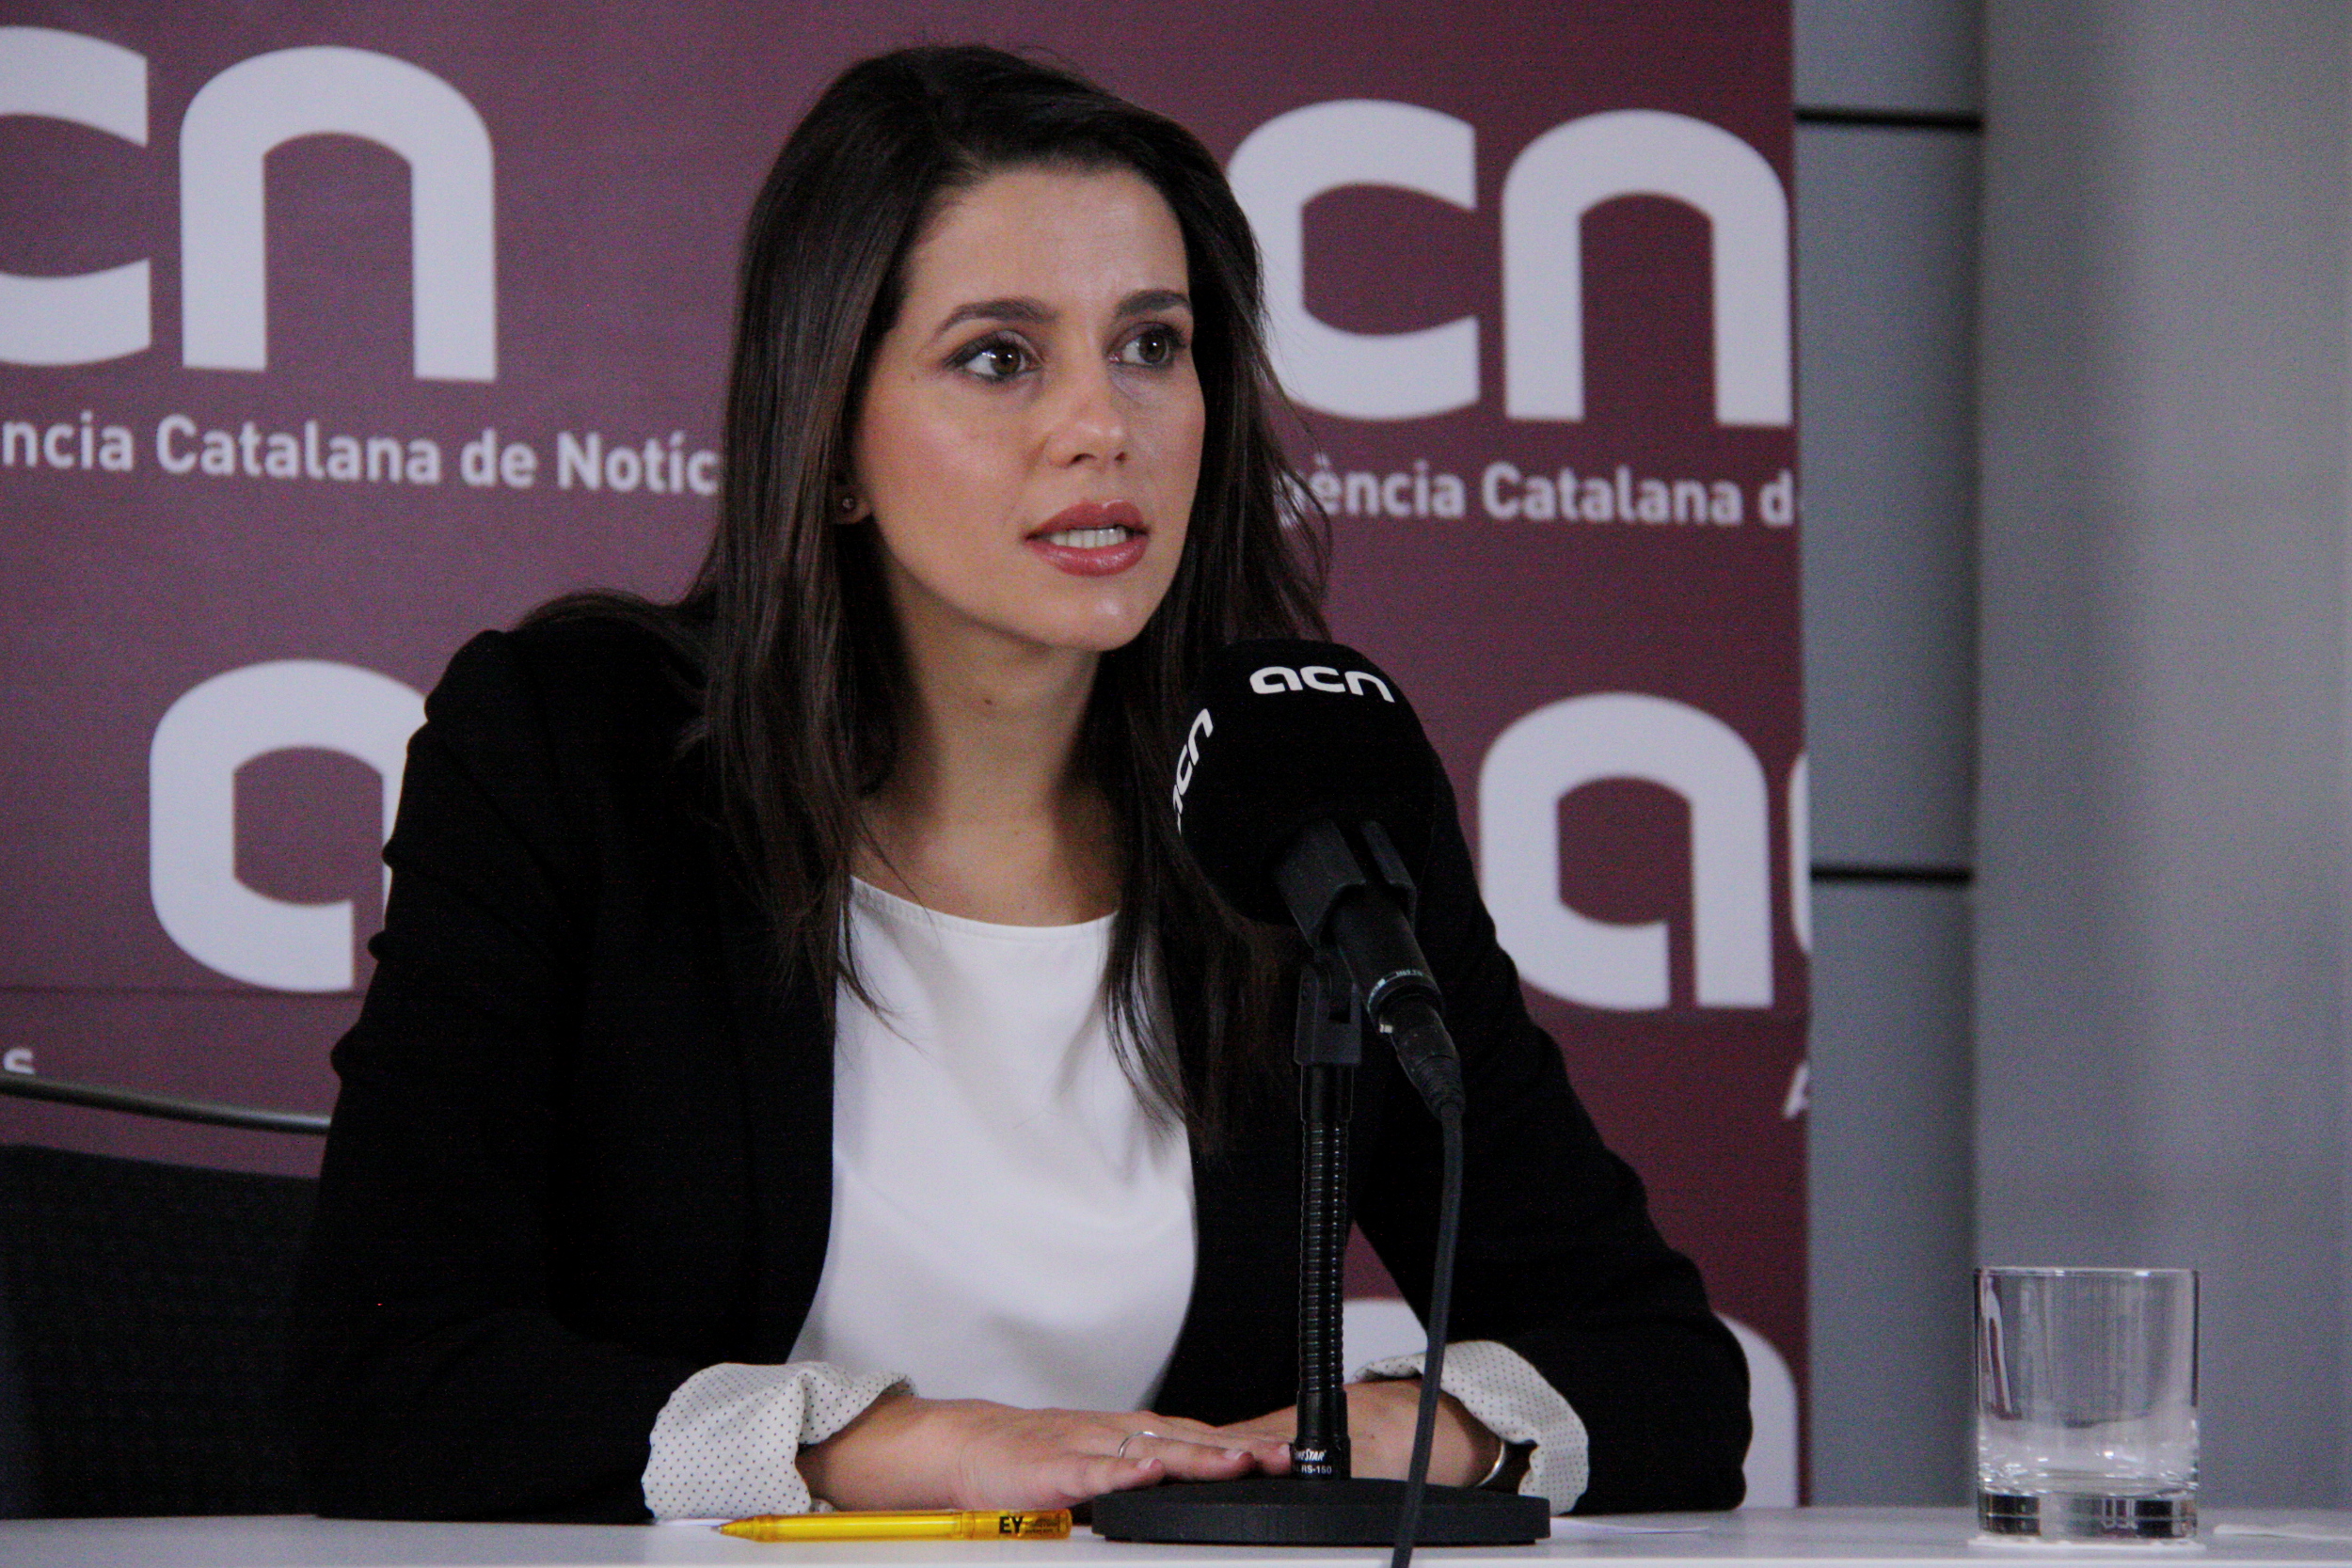 Ciutadans' candidate, Inés Arrimadas at press conference at CNA headquarters